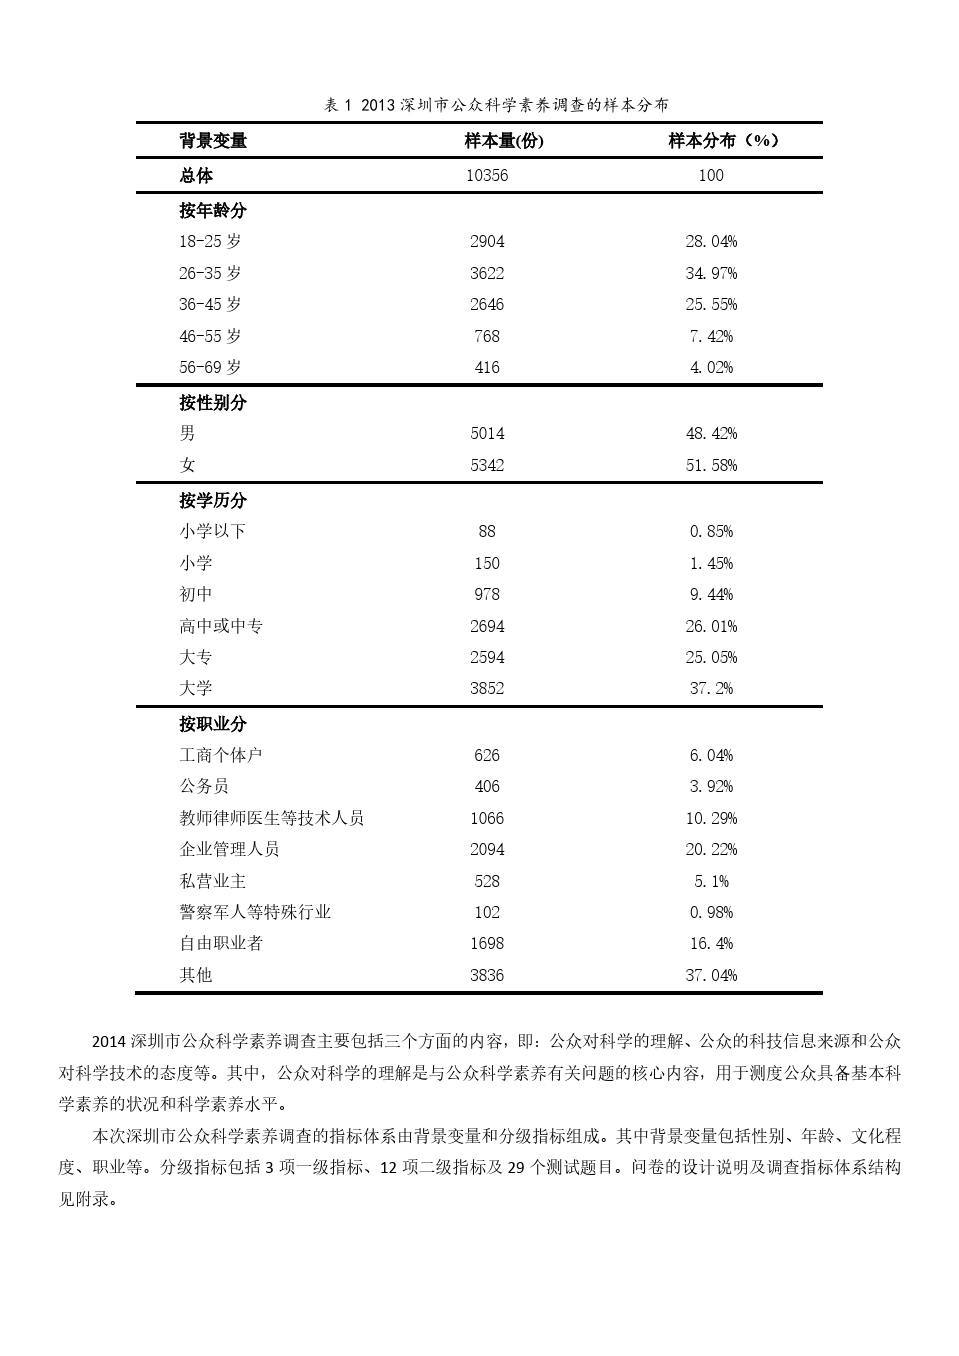 2014深圳市公众和中学生科学素养调查报告(内页)